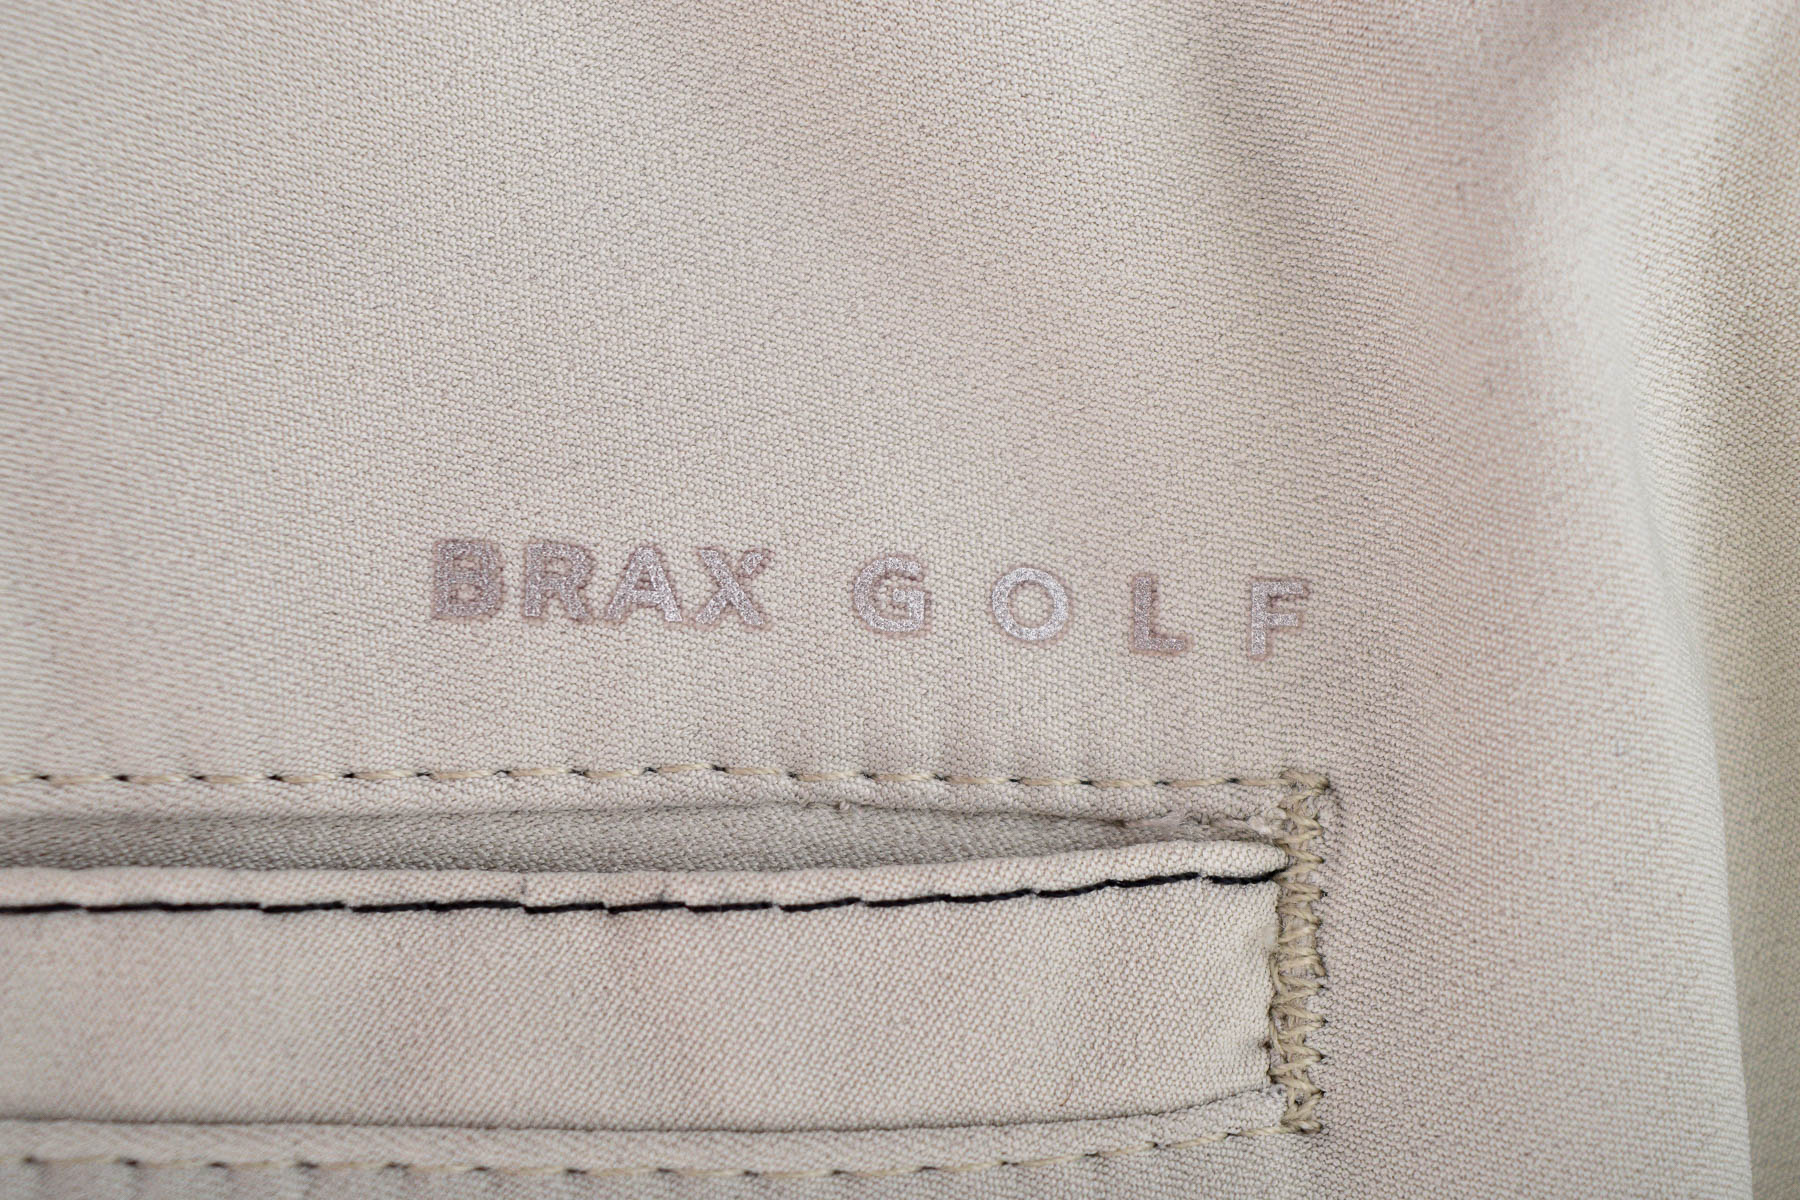 Ανδρικά παντελόνια - BRAX GOLF - 2